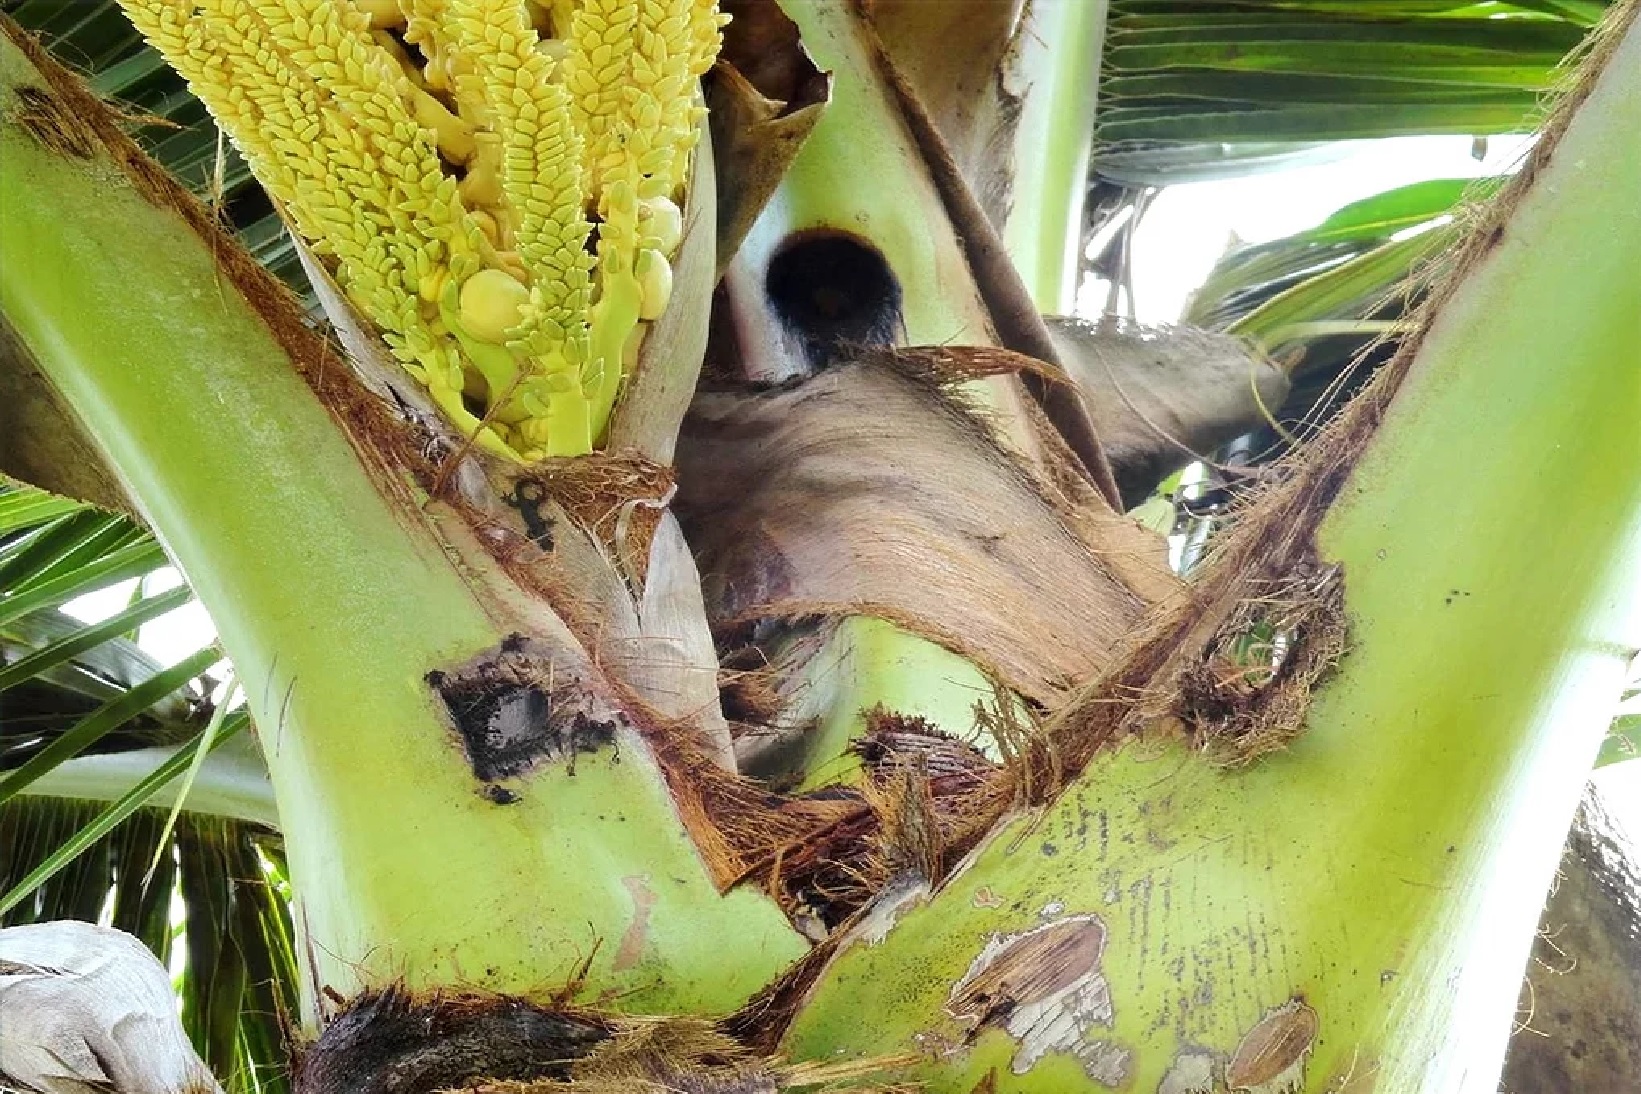 Base of palm fronds with borehole damage.